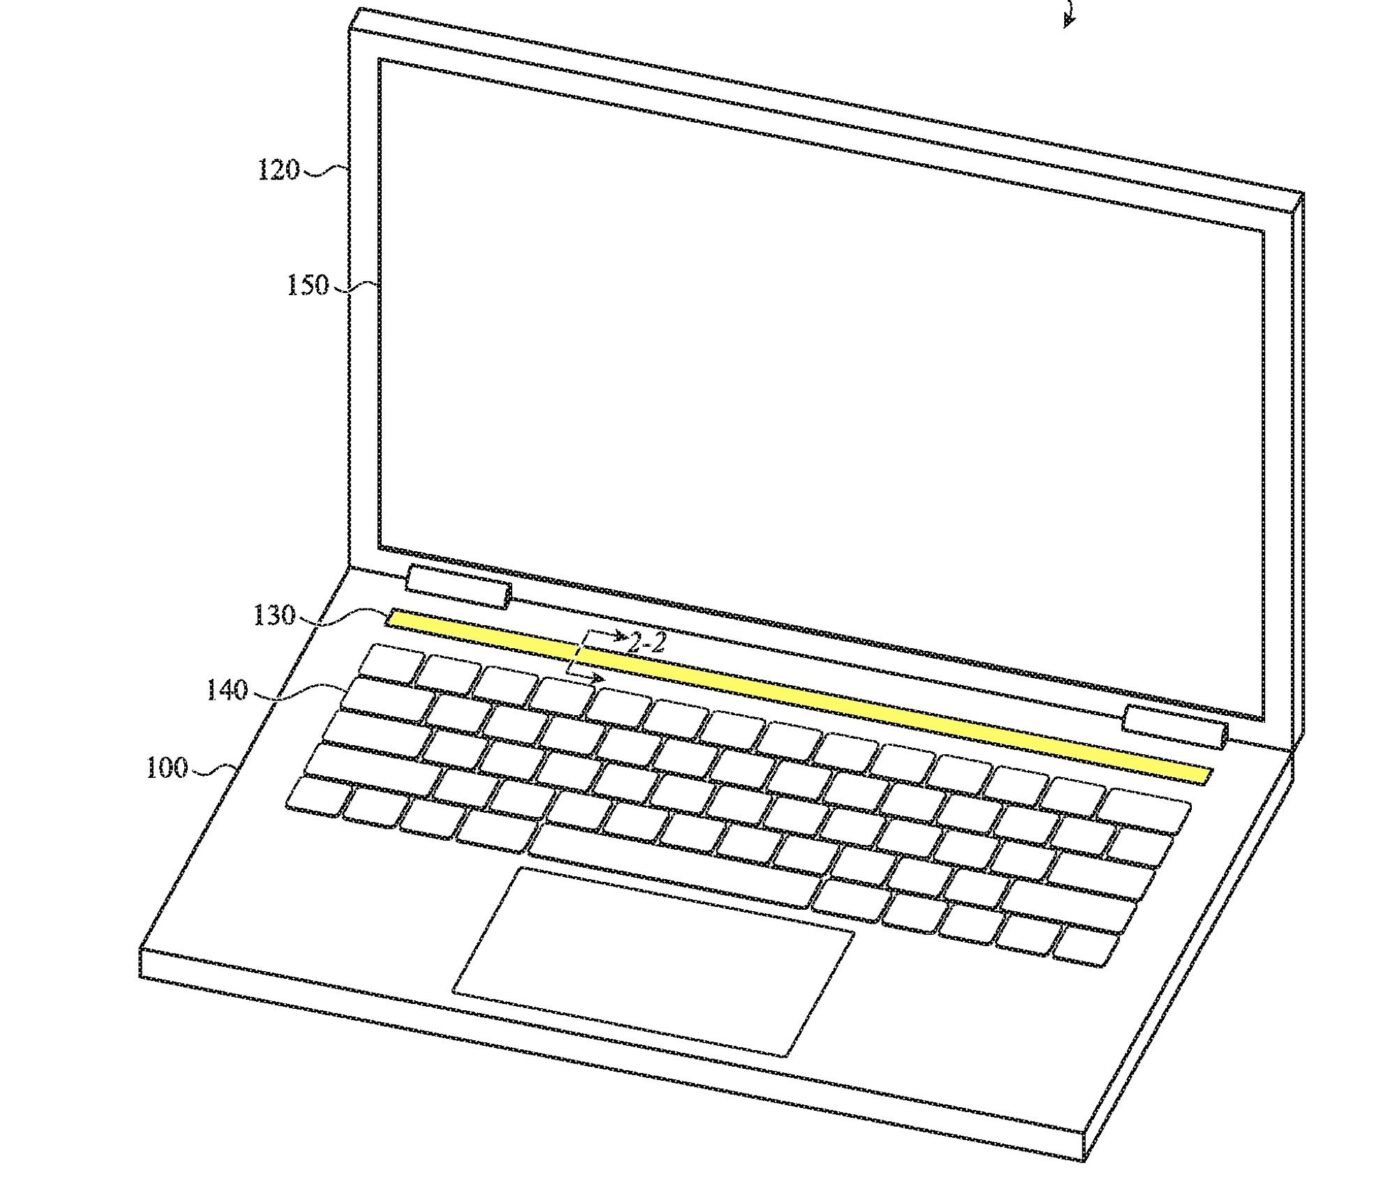 Apple ha brevettato la Touch Bar per il Mac con tecnologia Force Touch